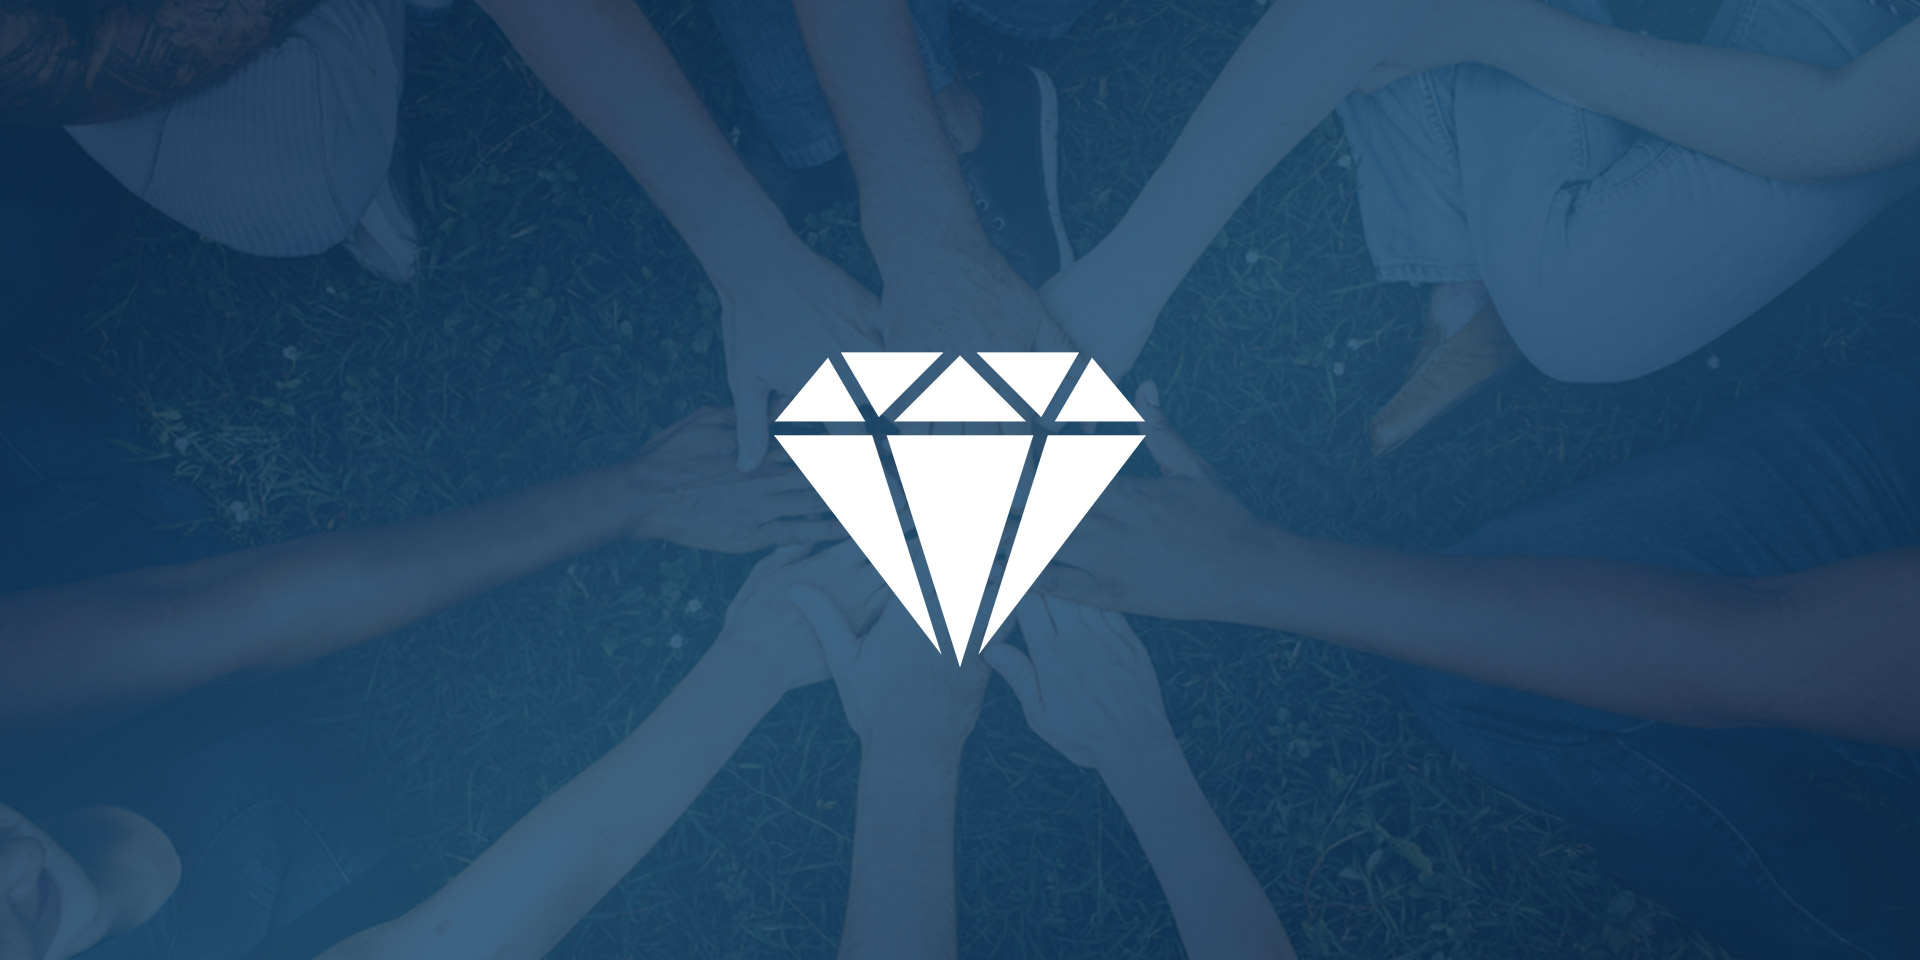 fond bleu avec un groupe solidaire et un picto d'un diamant solid taillé